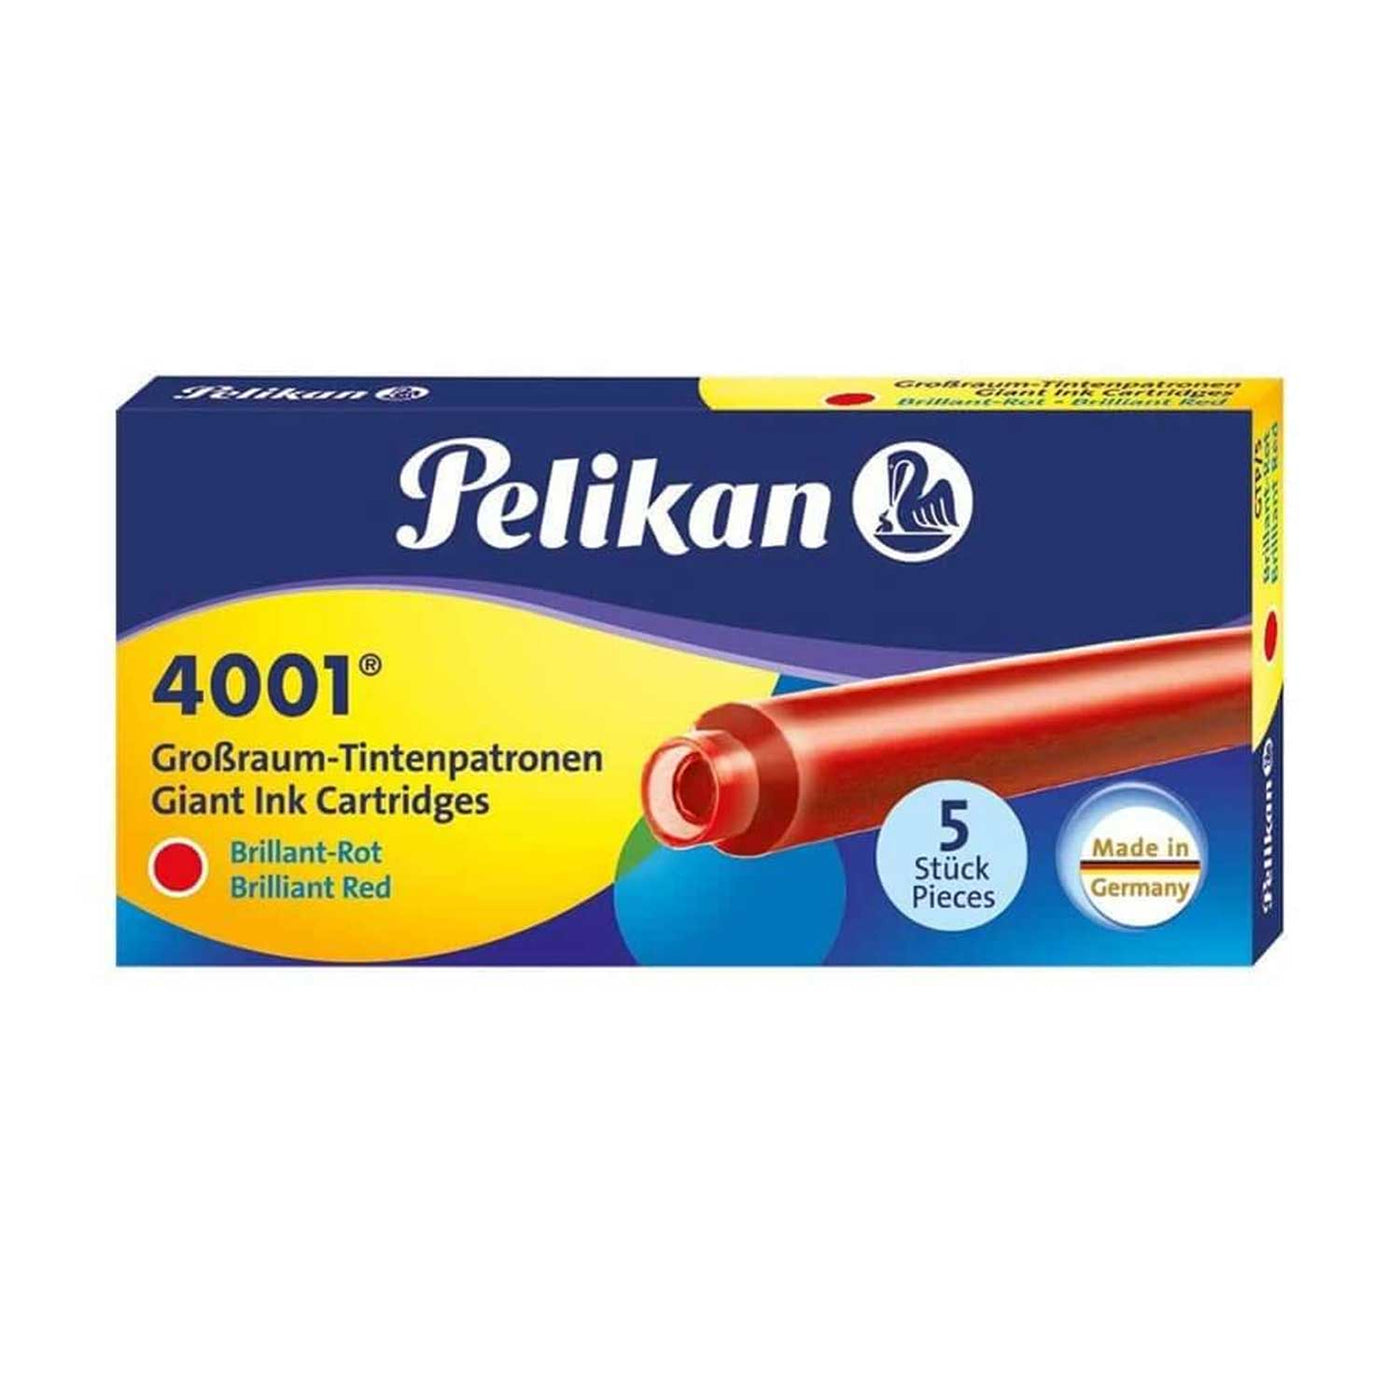 Pelikan 4001 Large Ink Cartridge Pack of 5 - Brilliant Red